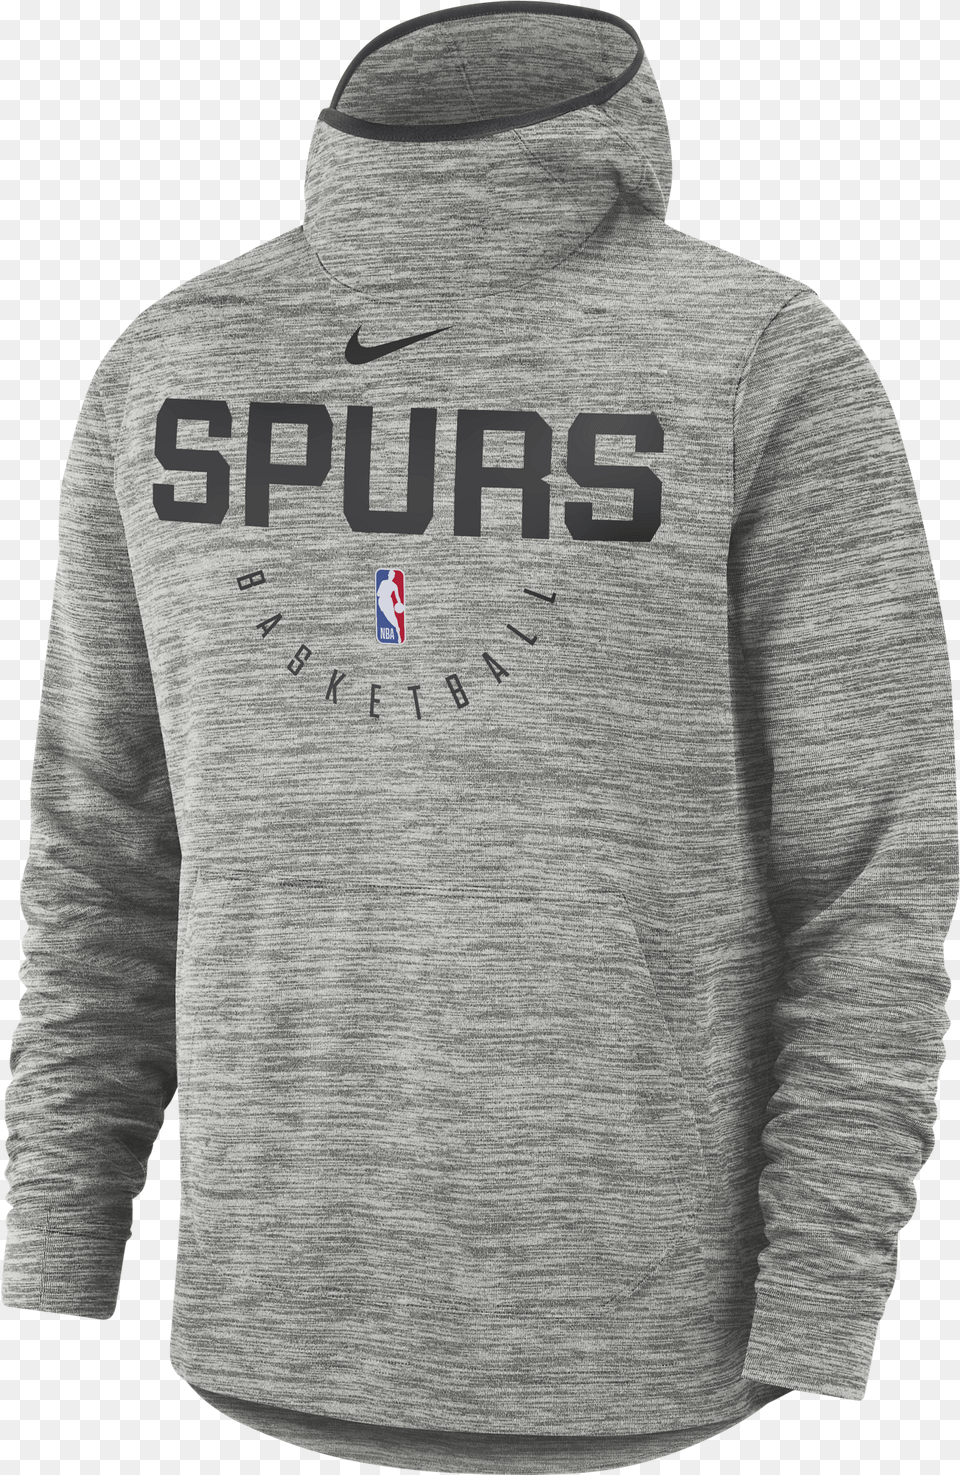 Nba San Antonio Spurs Spotlight Hoodie Nike Chicago Bulls Grey Hoodie, Sweatshirt, Clothing, Knitwear, Sweater Png Image